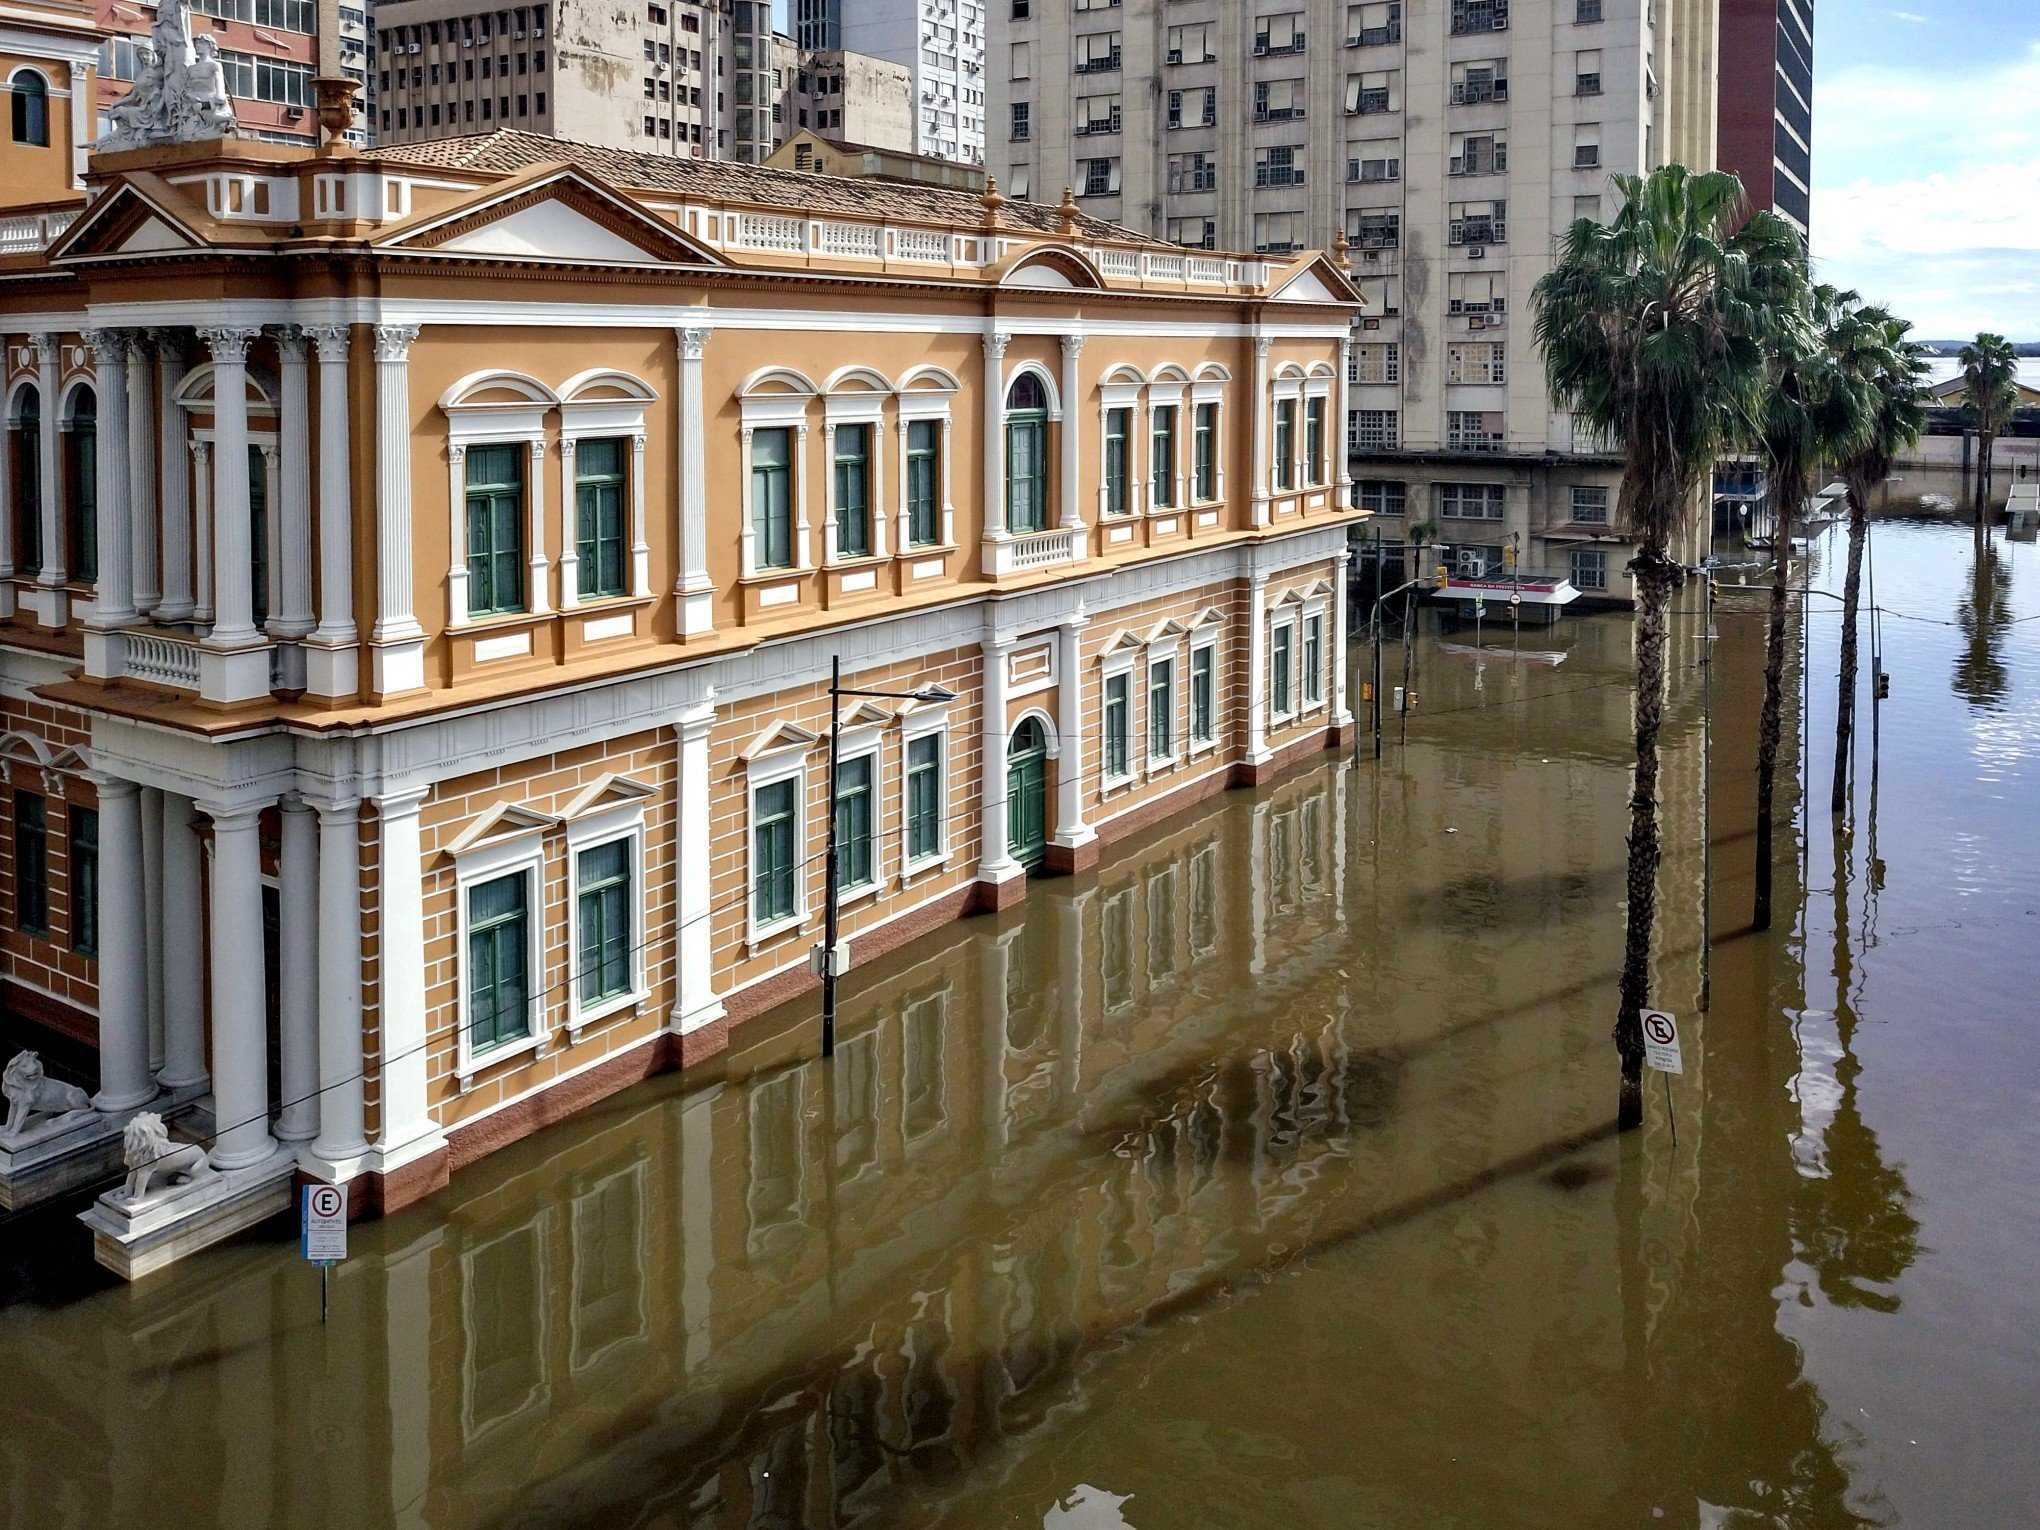 "Vazamentos estão em boa parte das comportas sem manutenção", avaliam especialistas sobre inundação em Porto Alegre